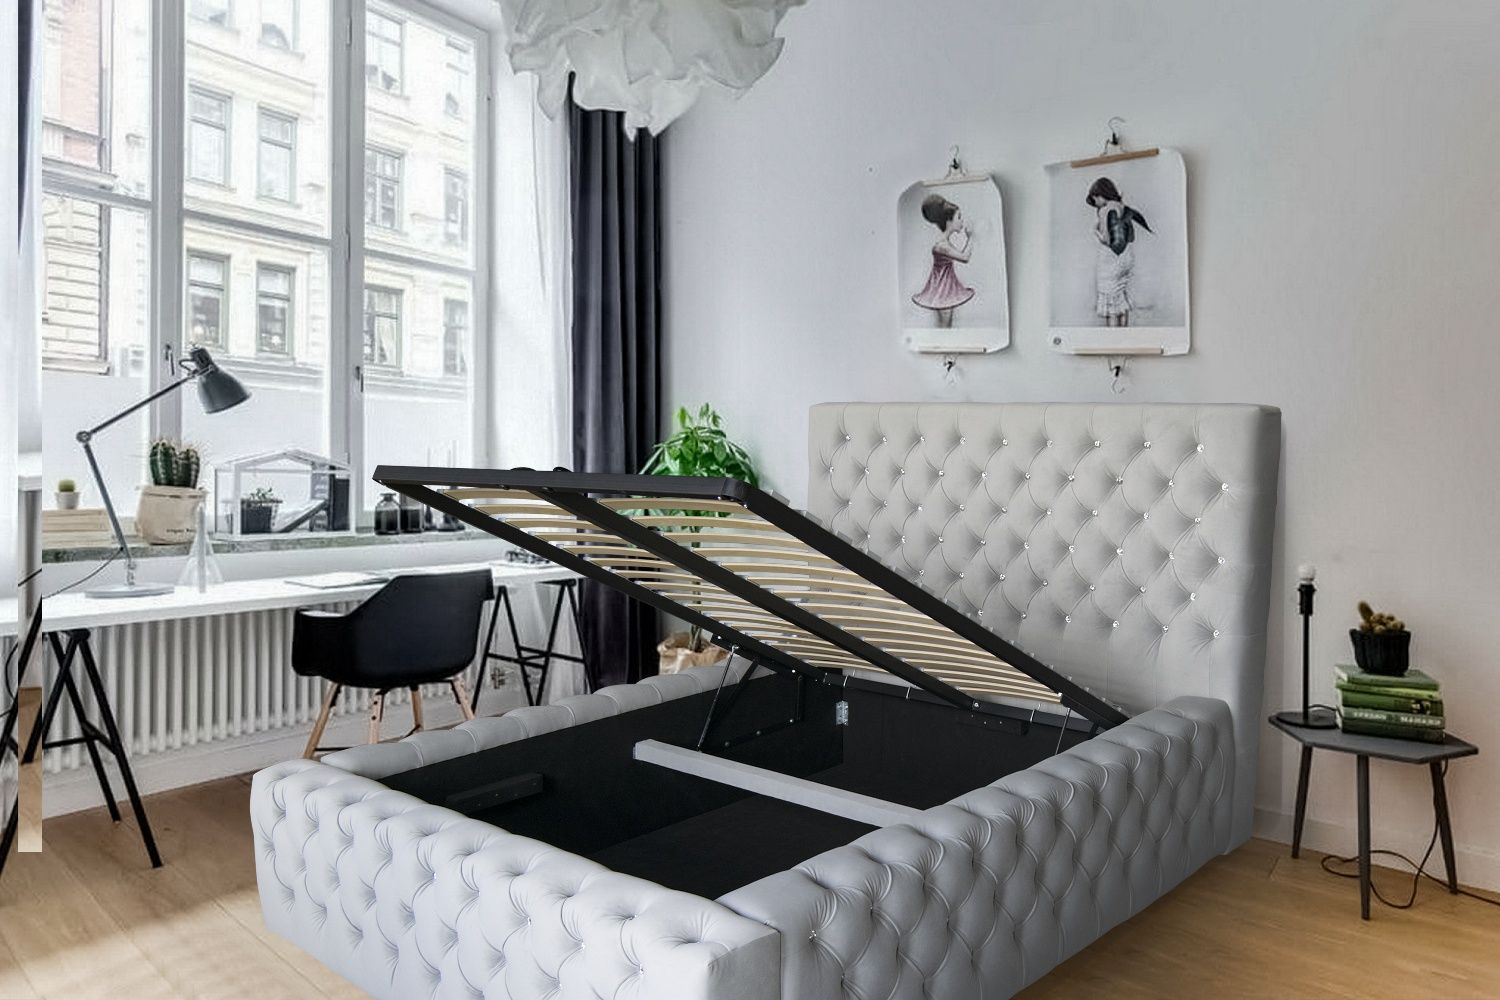 Łóżko sypialniane tapicerowane głeboko pikowane glamour